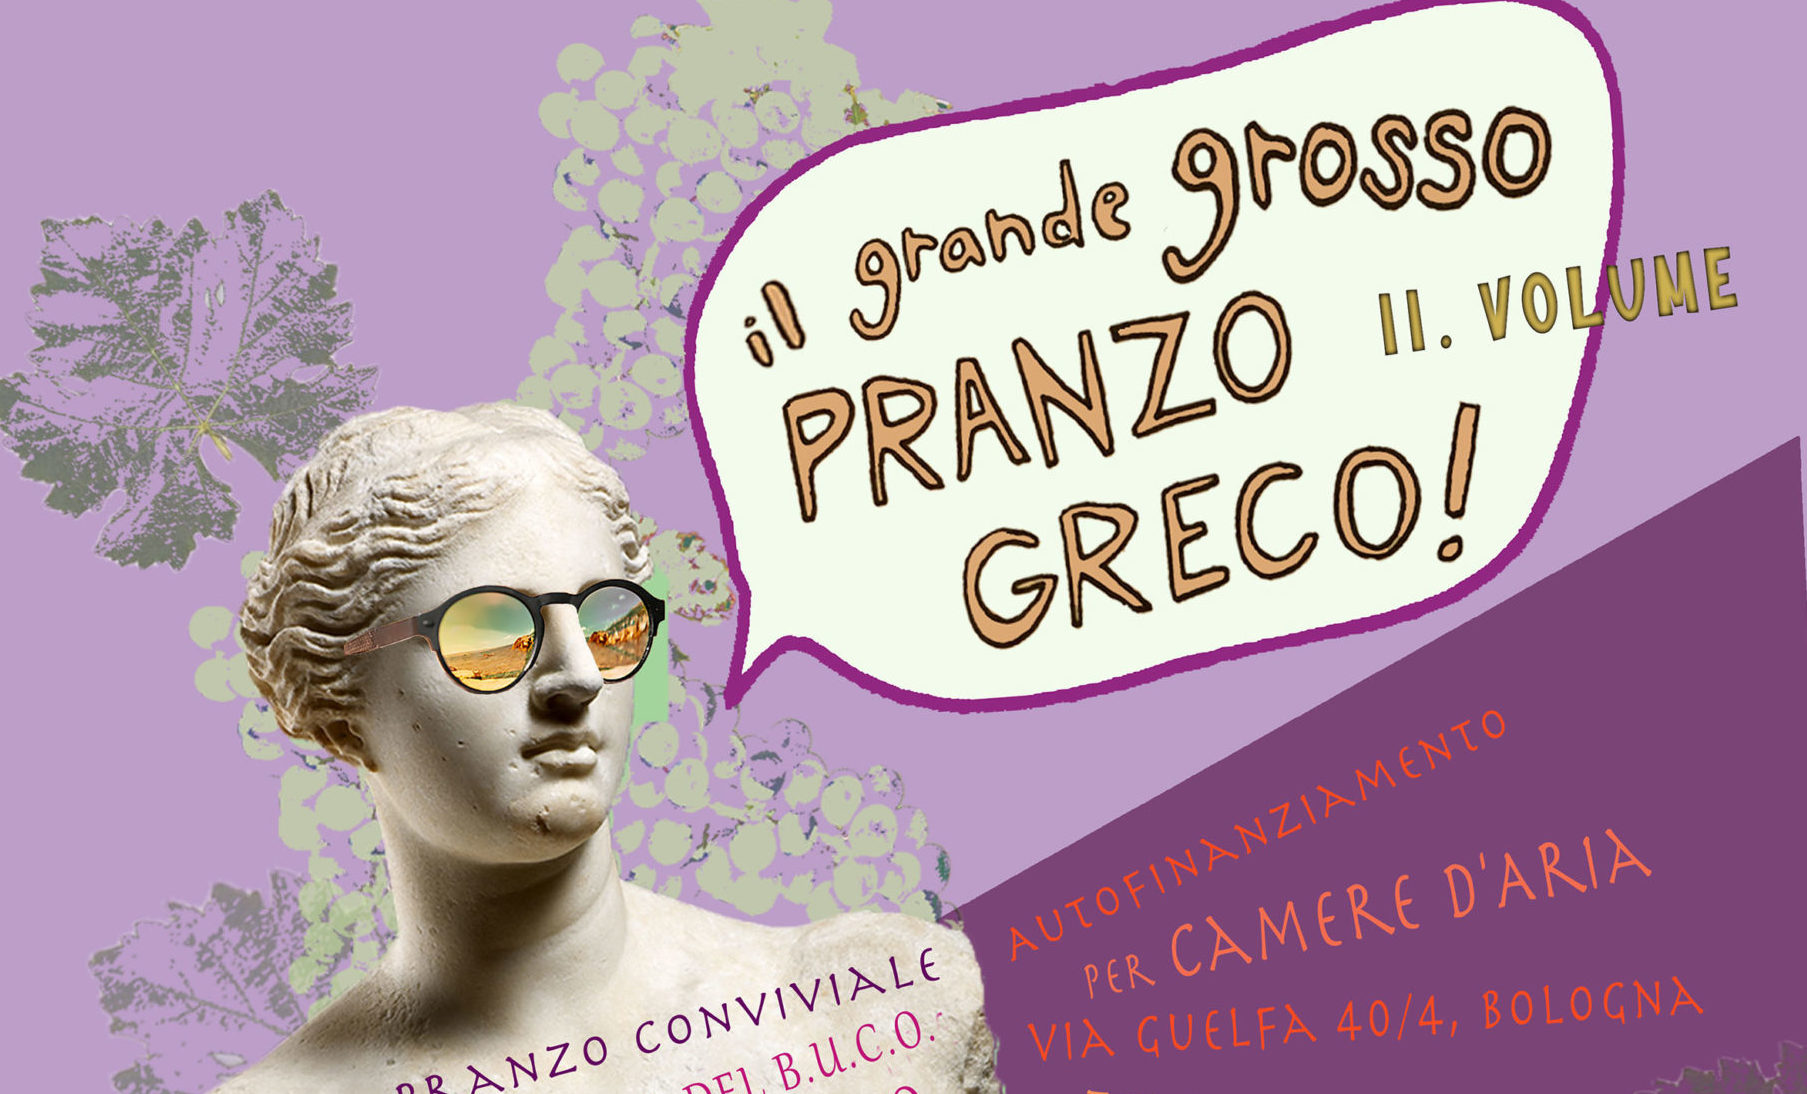 Grande Grosso Pranzo Greco II.VOLUME